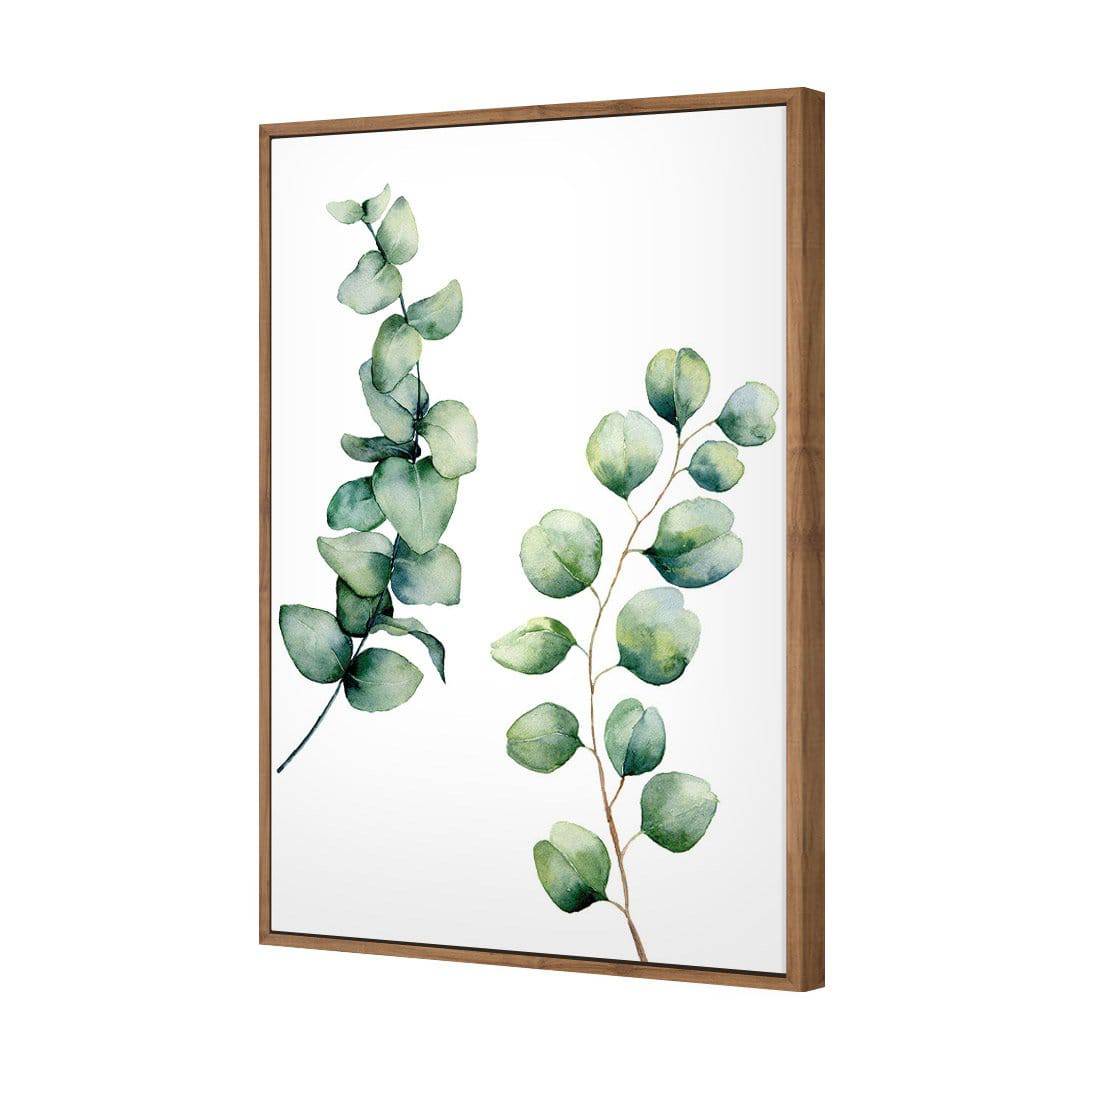 Eucalyptus Duo Canvas Art-Canvas-Wall Art Designs-45x30cm-Canvas - Natural Frame-Wall Art Designs